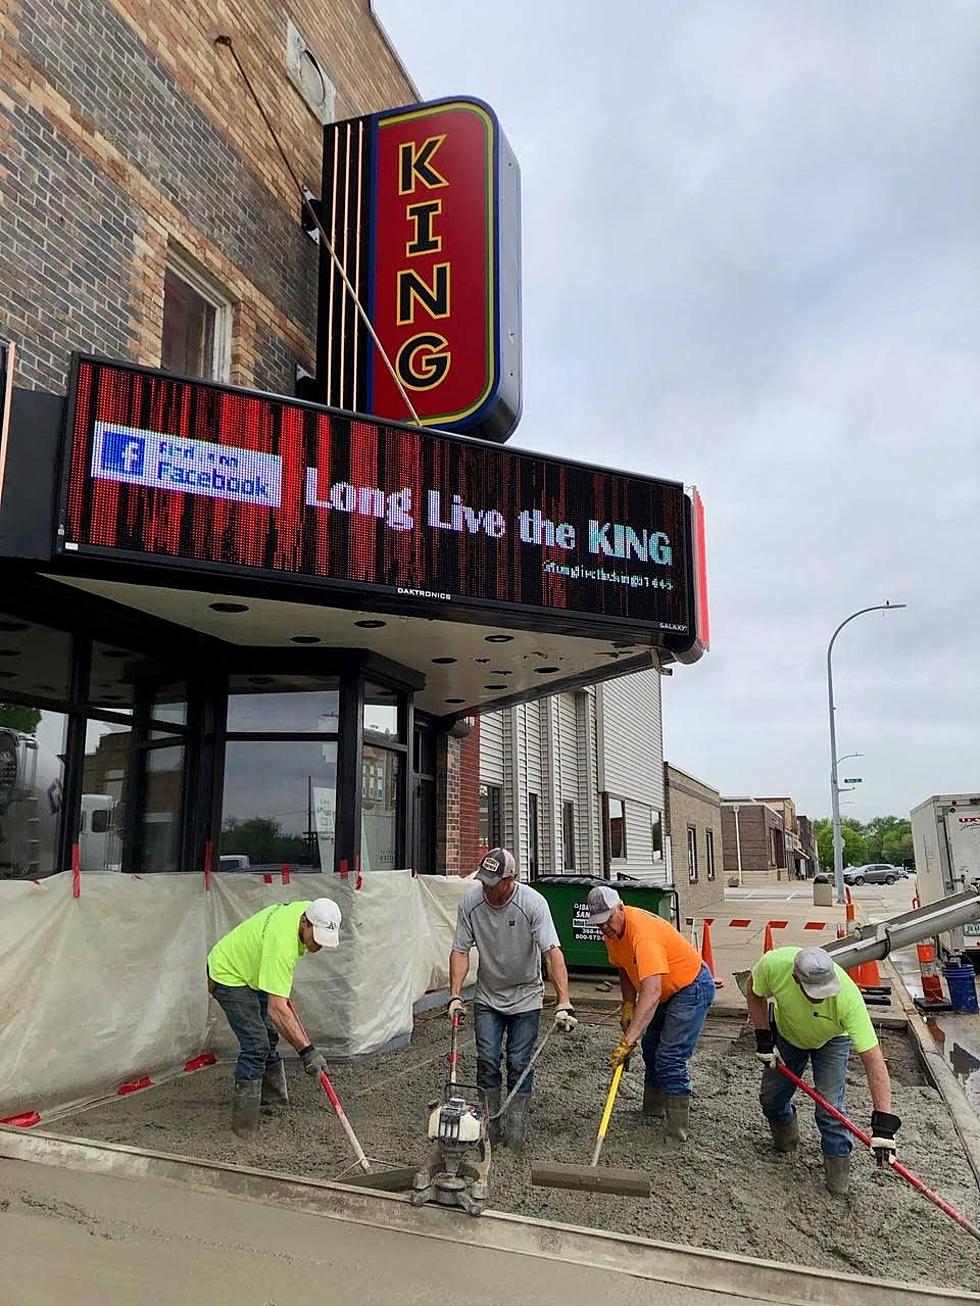 A Renovated Theatre Rejuvenates Small Iowa Community